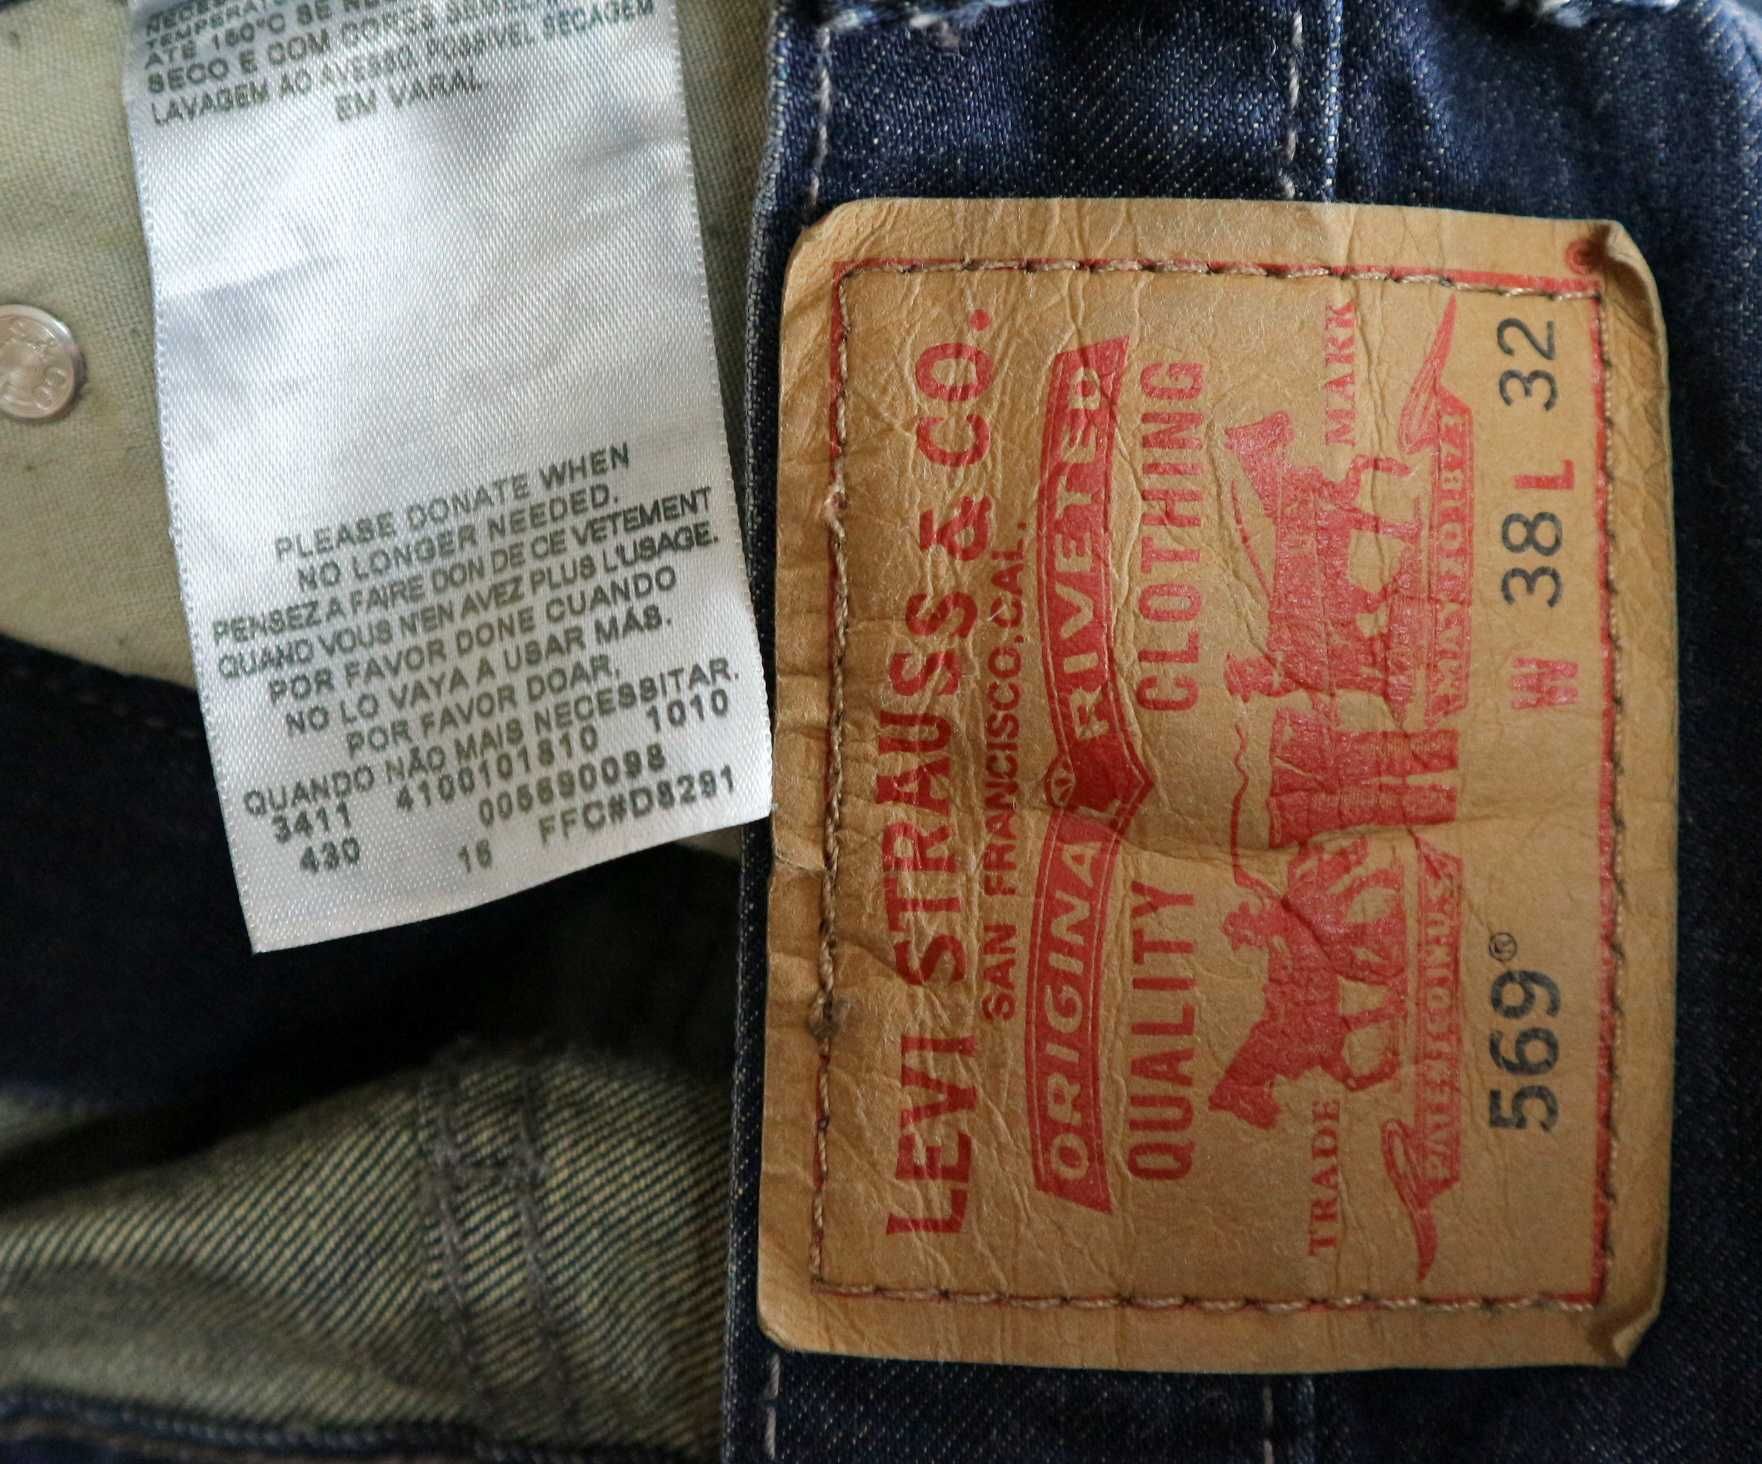 Levis 569 Loose Straight spodnie jeansy W38 L32 pas 2 x 52 cm